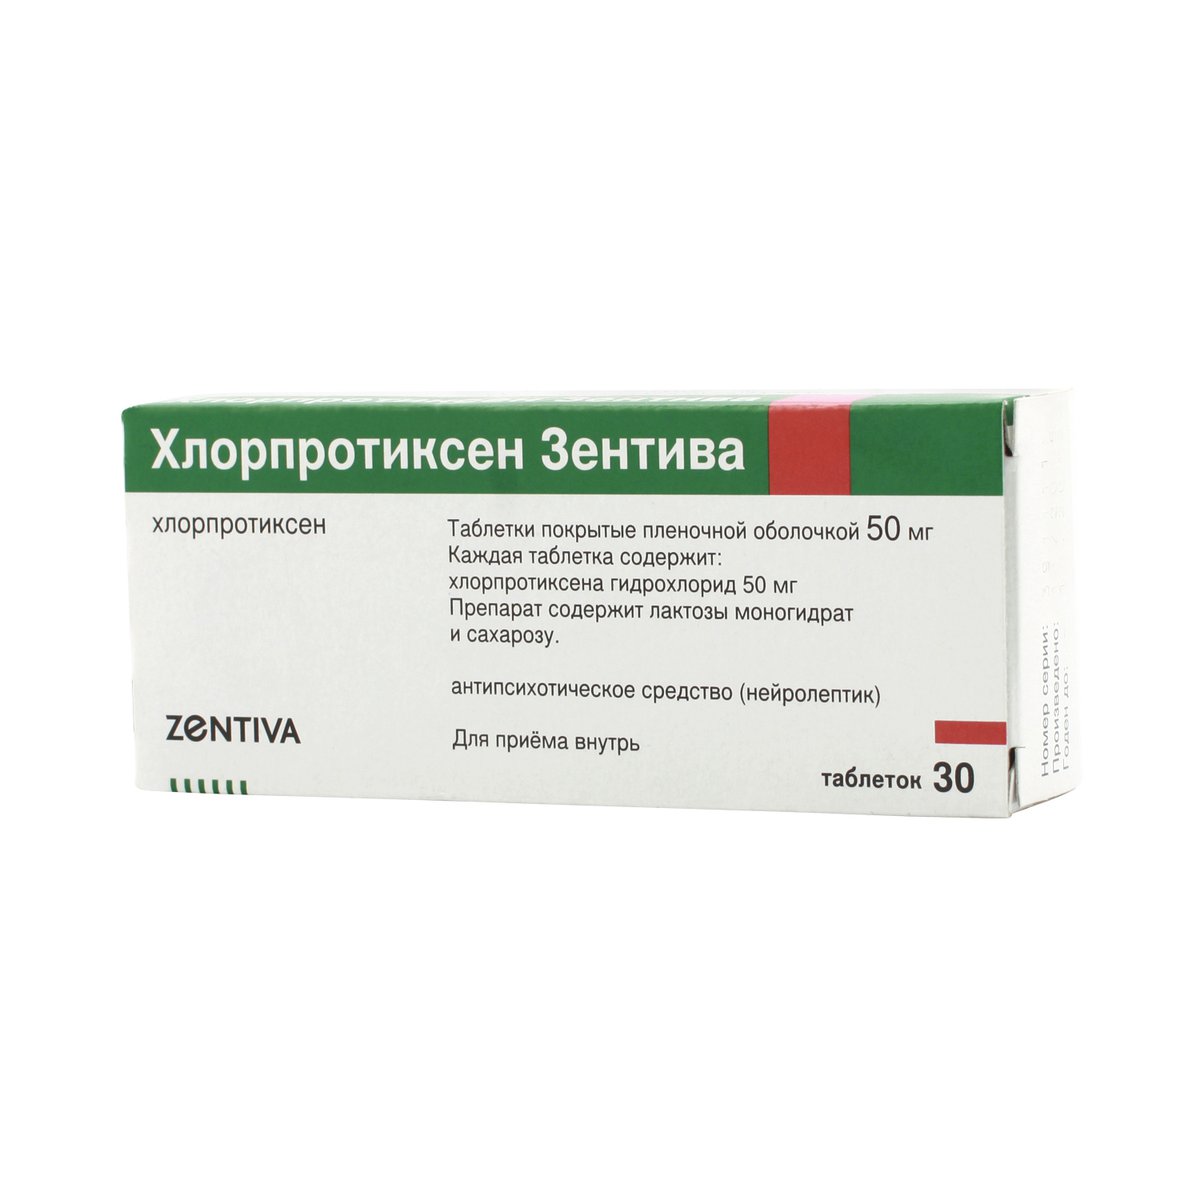 Хлорпротиксен (таблетки, 30 шт, 50 мг, для приема внутрь) - цена .